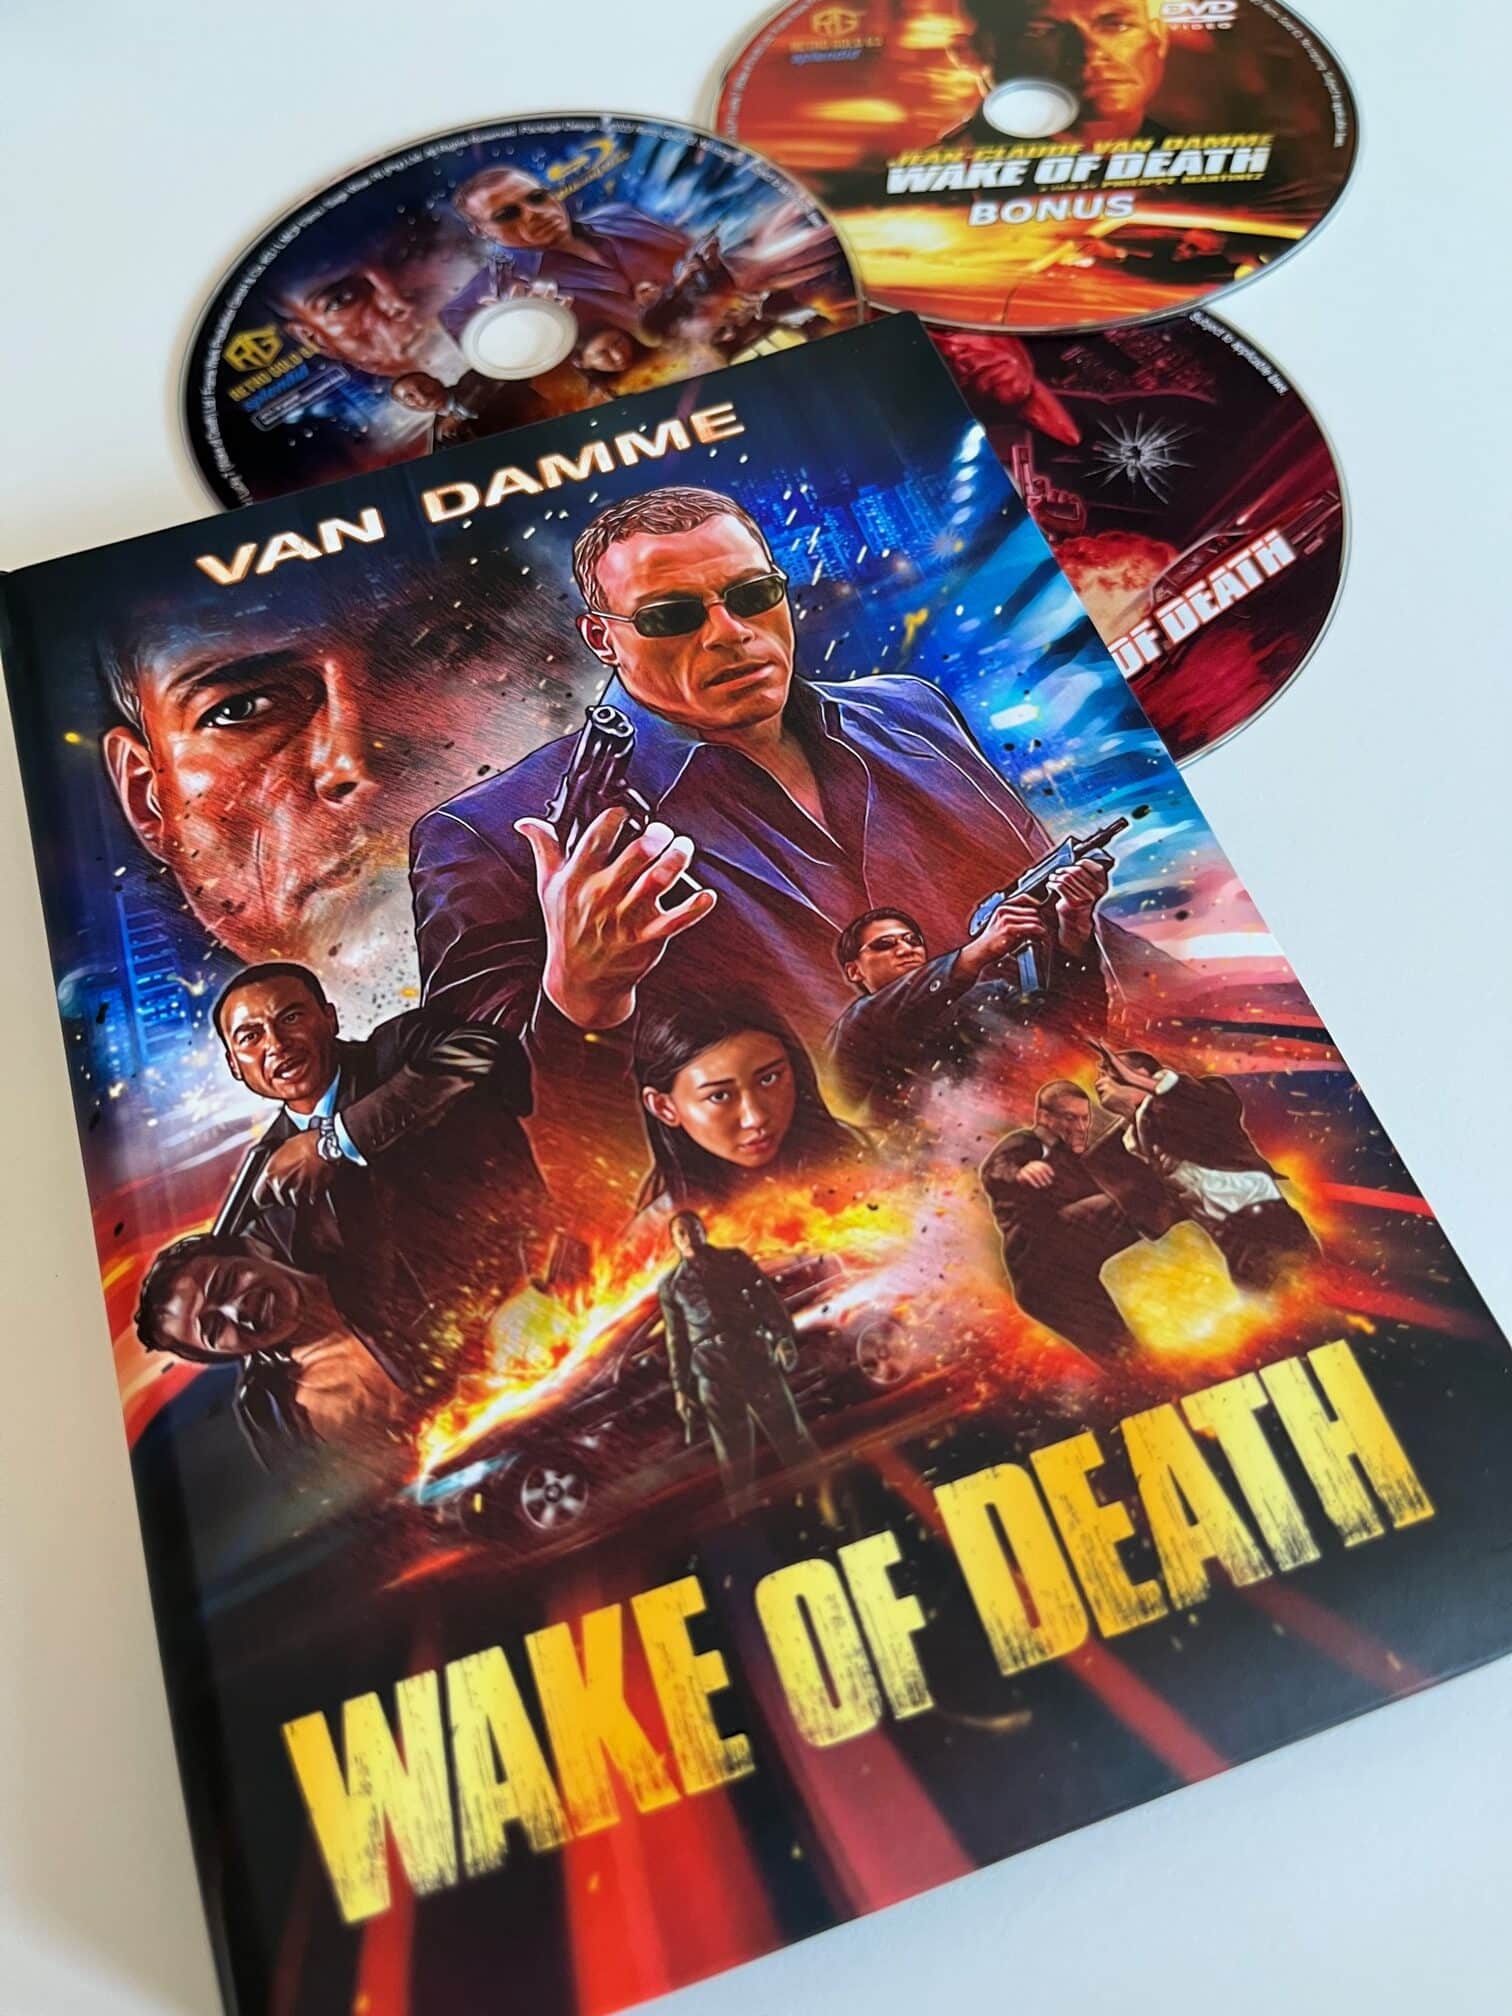 [Review] Wake of Death (2004) im wattierten Blu-ray-Mediabook (inkl. DVD und Bonus-DVD)